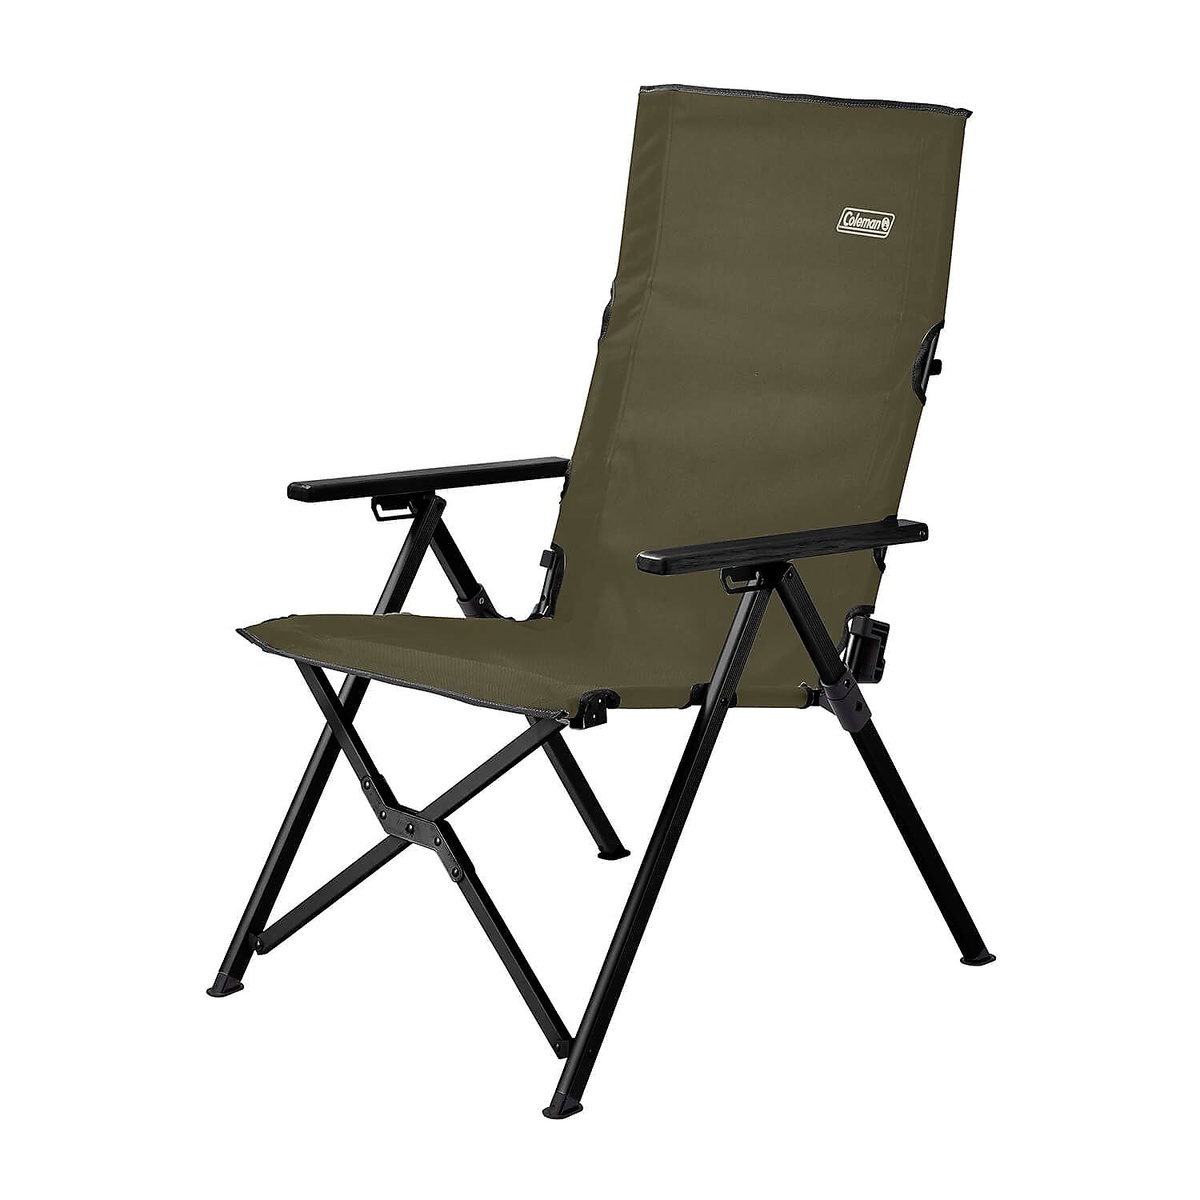 コールマン キャンプ用品 ファミリーチェア 椅子 レイチェア 2000033808 新色追加して再販 COLEMAN オリーブ 今だけスーパーセール限定